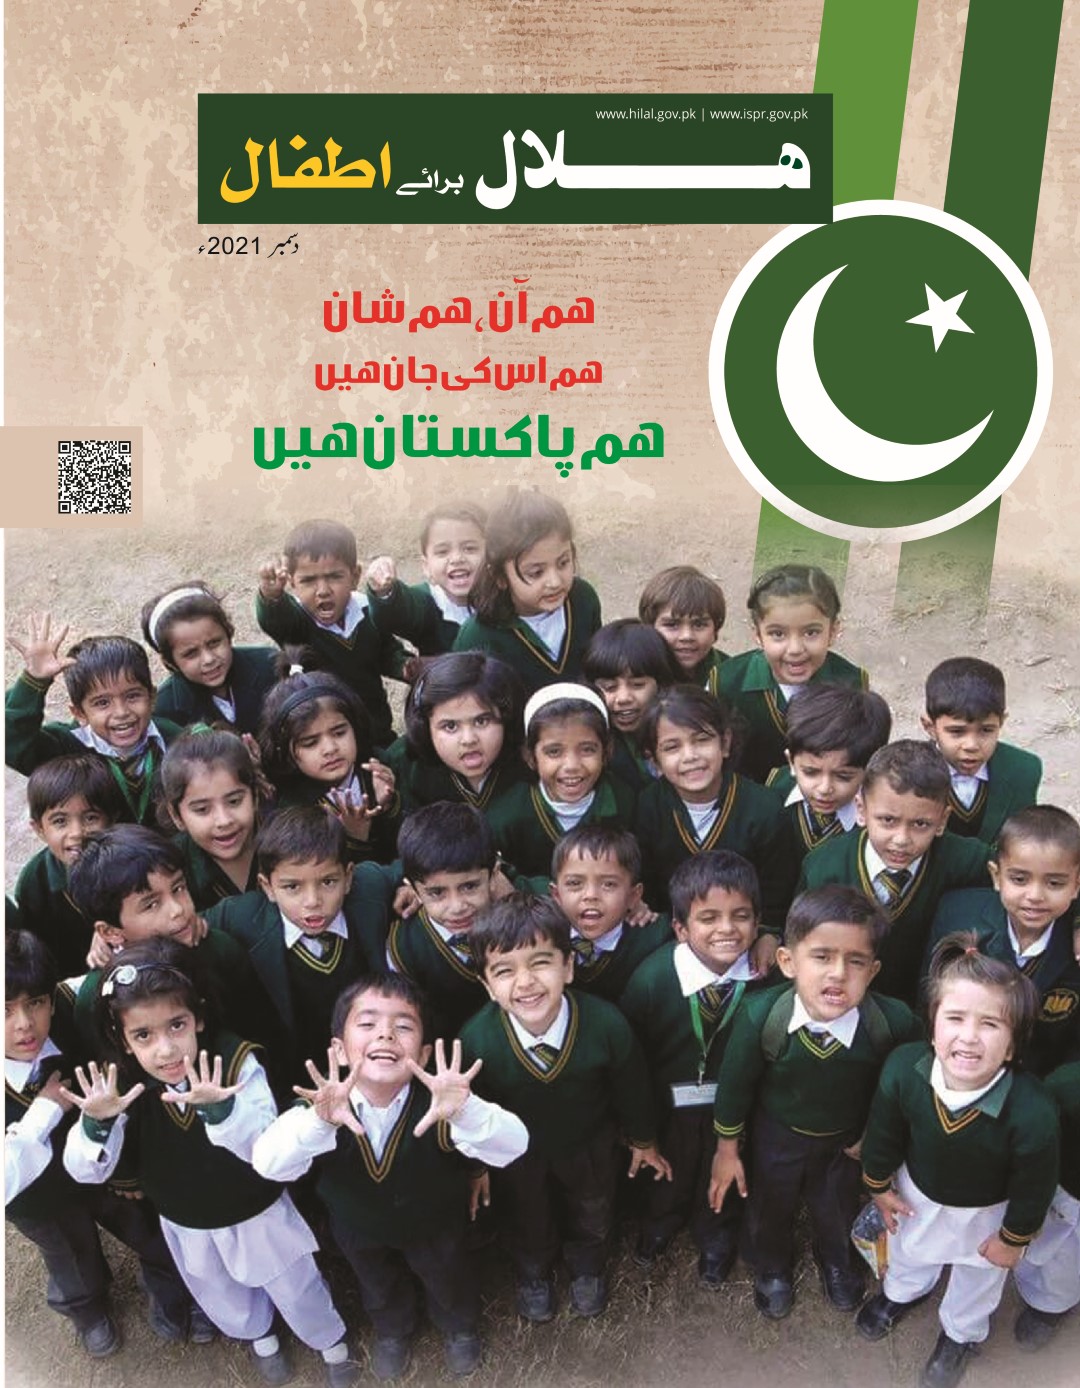 Hilal for Kids Urdu December 2021